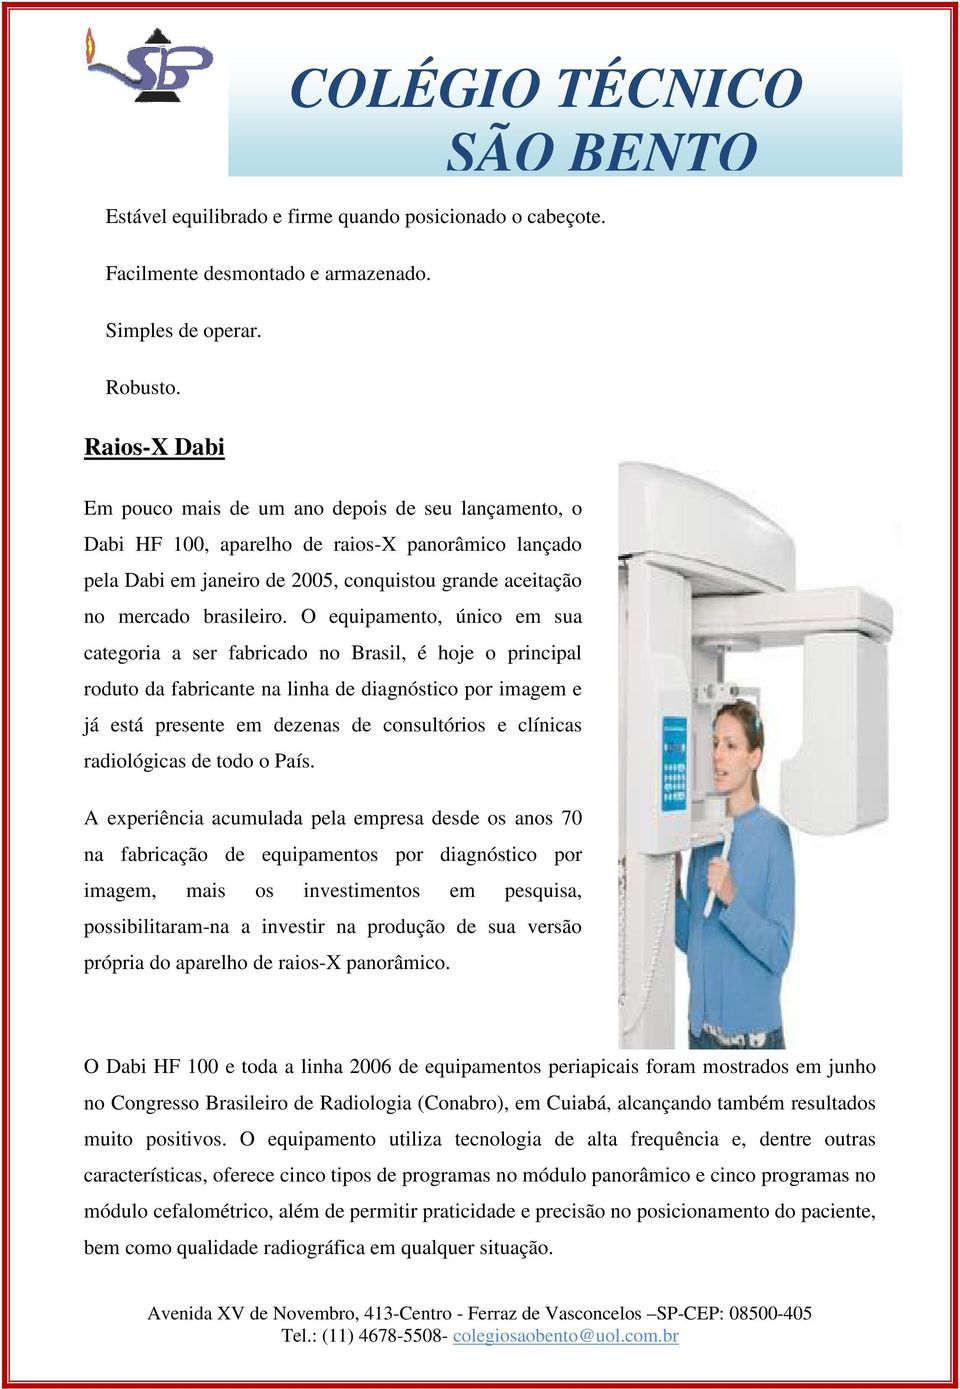 O equipamento, único em sua categoria a ser fabricado no Brasil, é hoje o principal roduto da fabricante na linha de diagnóstico por imagem e já está presente em dezenas de consultórios e clínicas